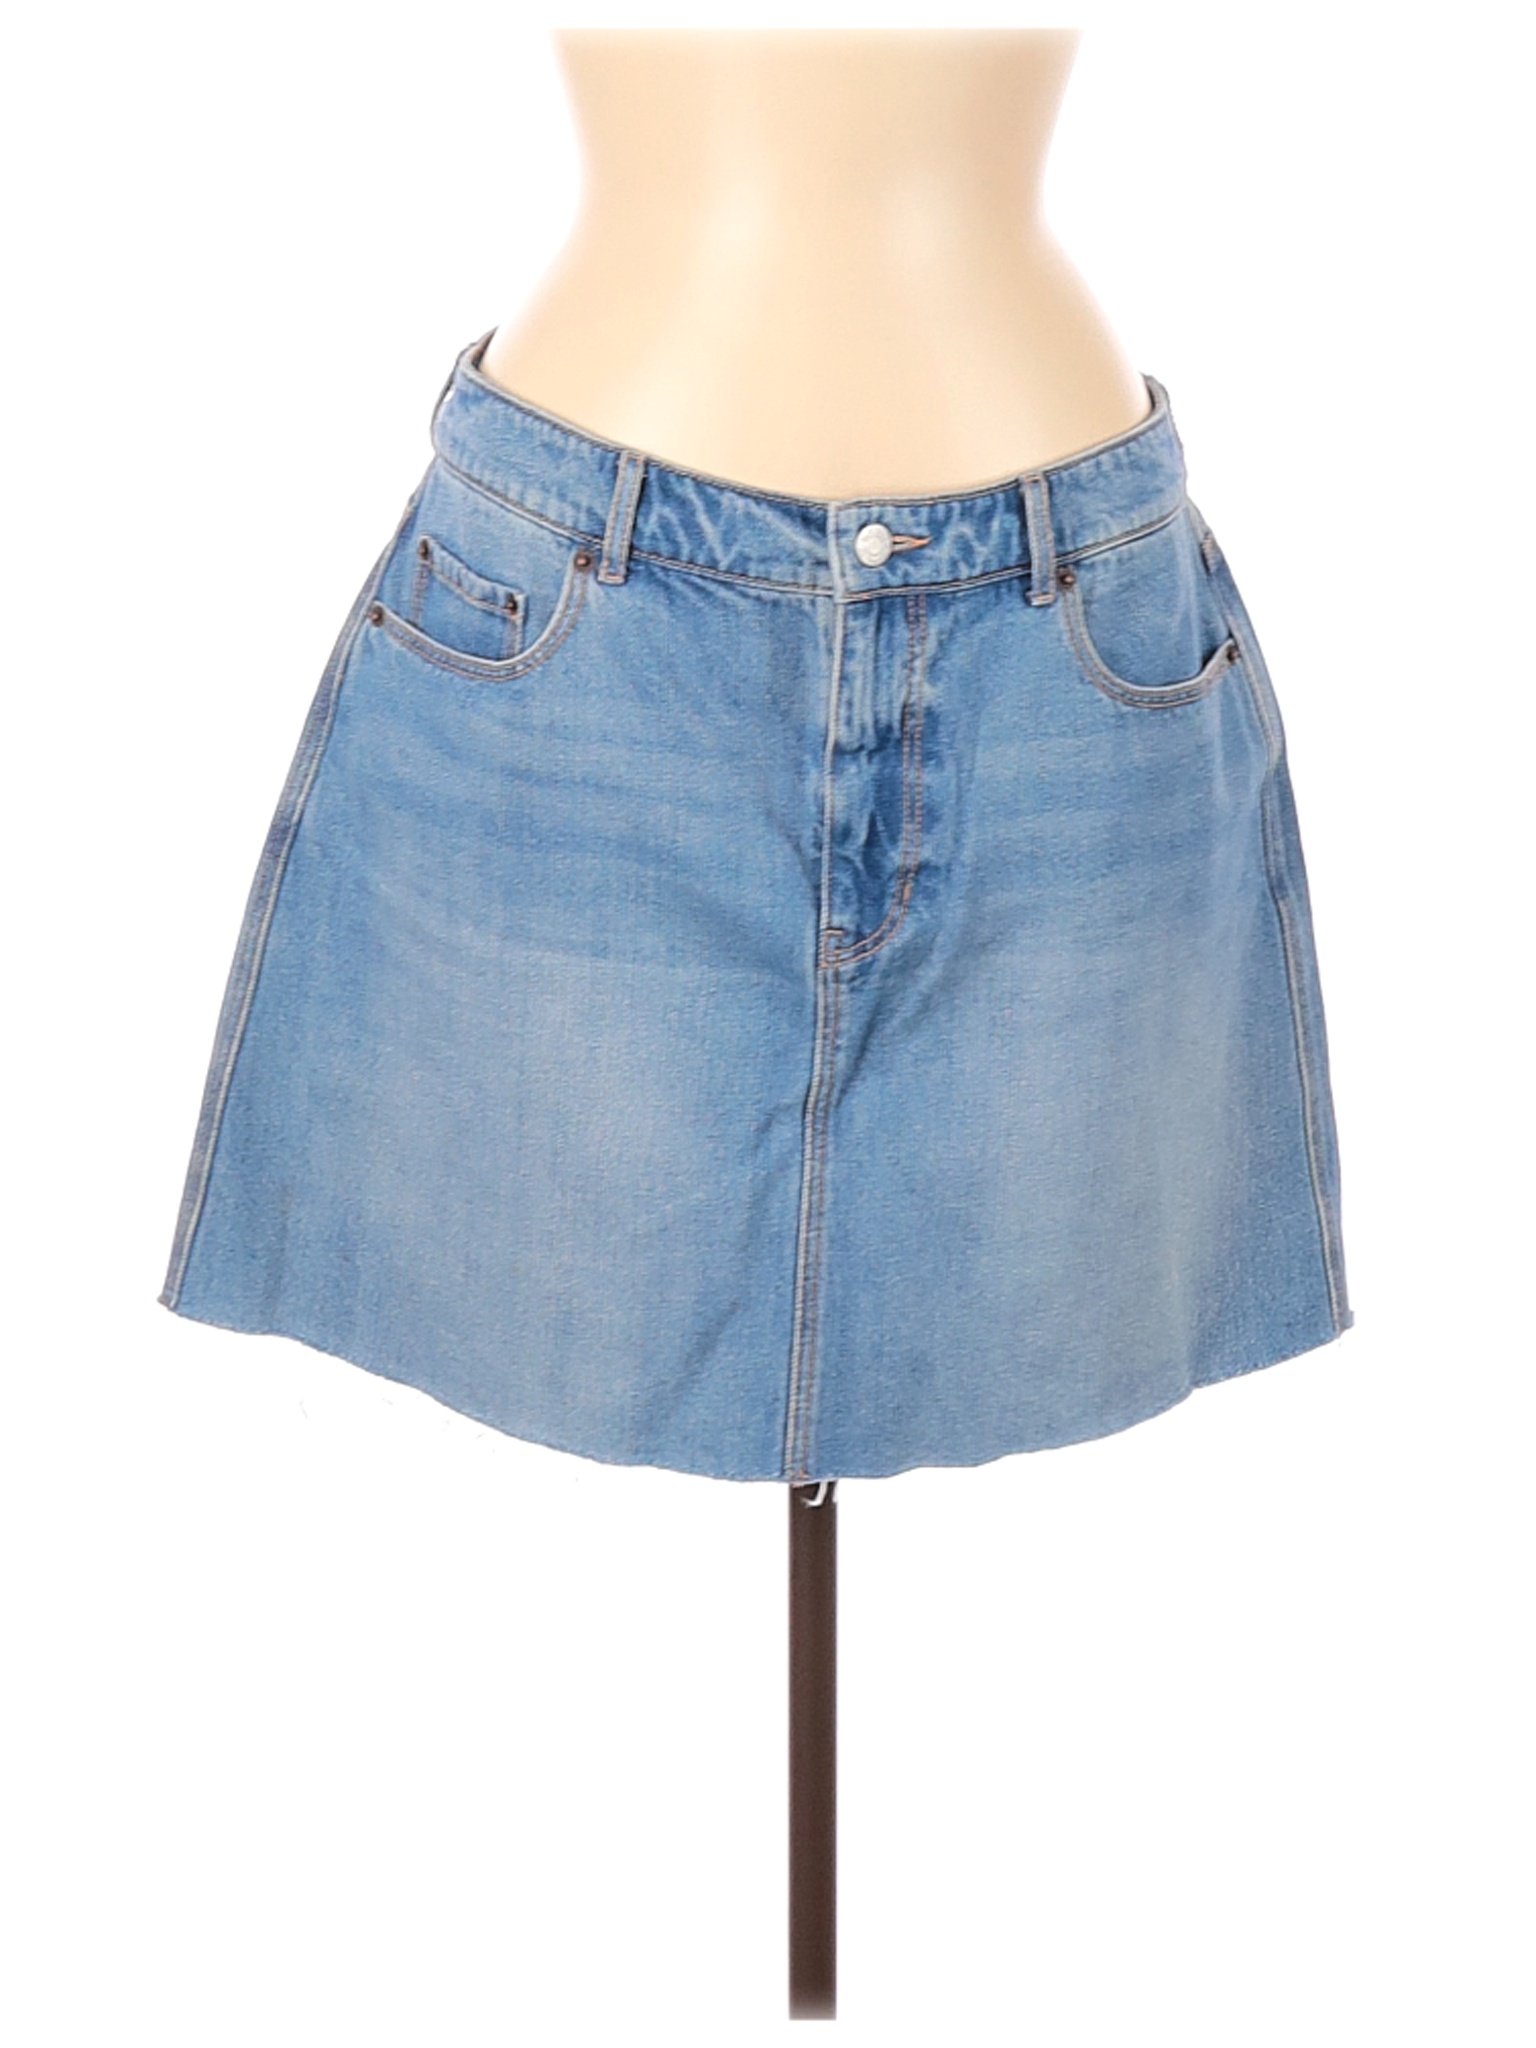 Old Navy Women Blue Denim Skirt 10 | eBay